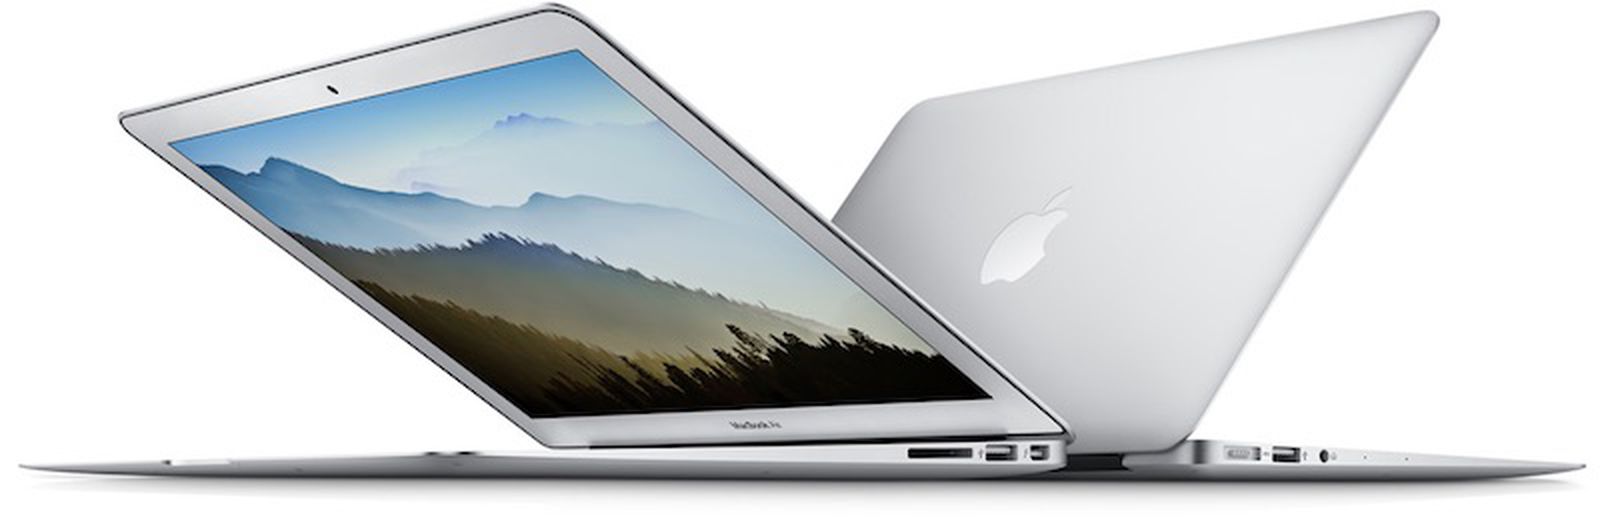 13-Inch MacBook Air Models Now Have 8GB RAM Standard - MacRumors